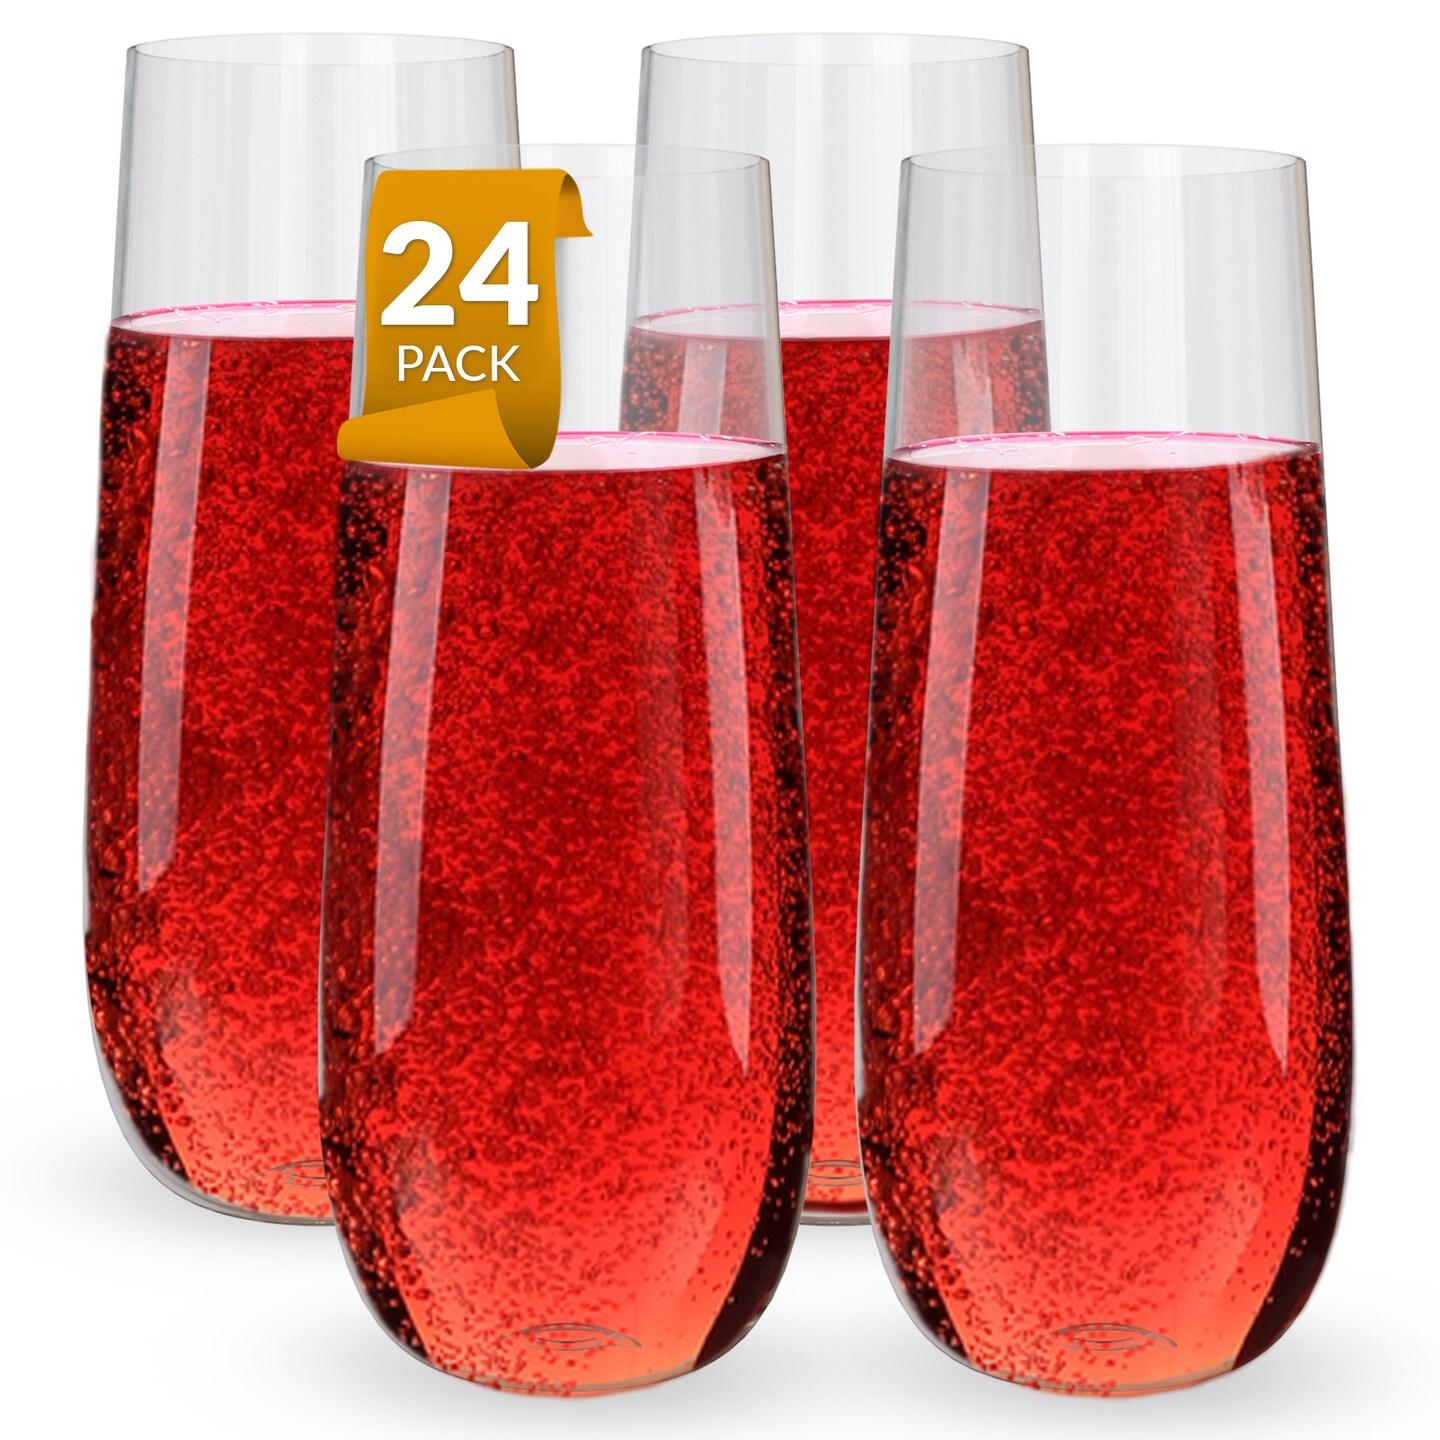 8 oz. Personalized Fiancé Reusable Glass Champagne Flute Set - 2